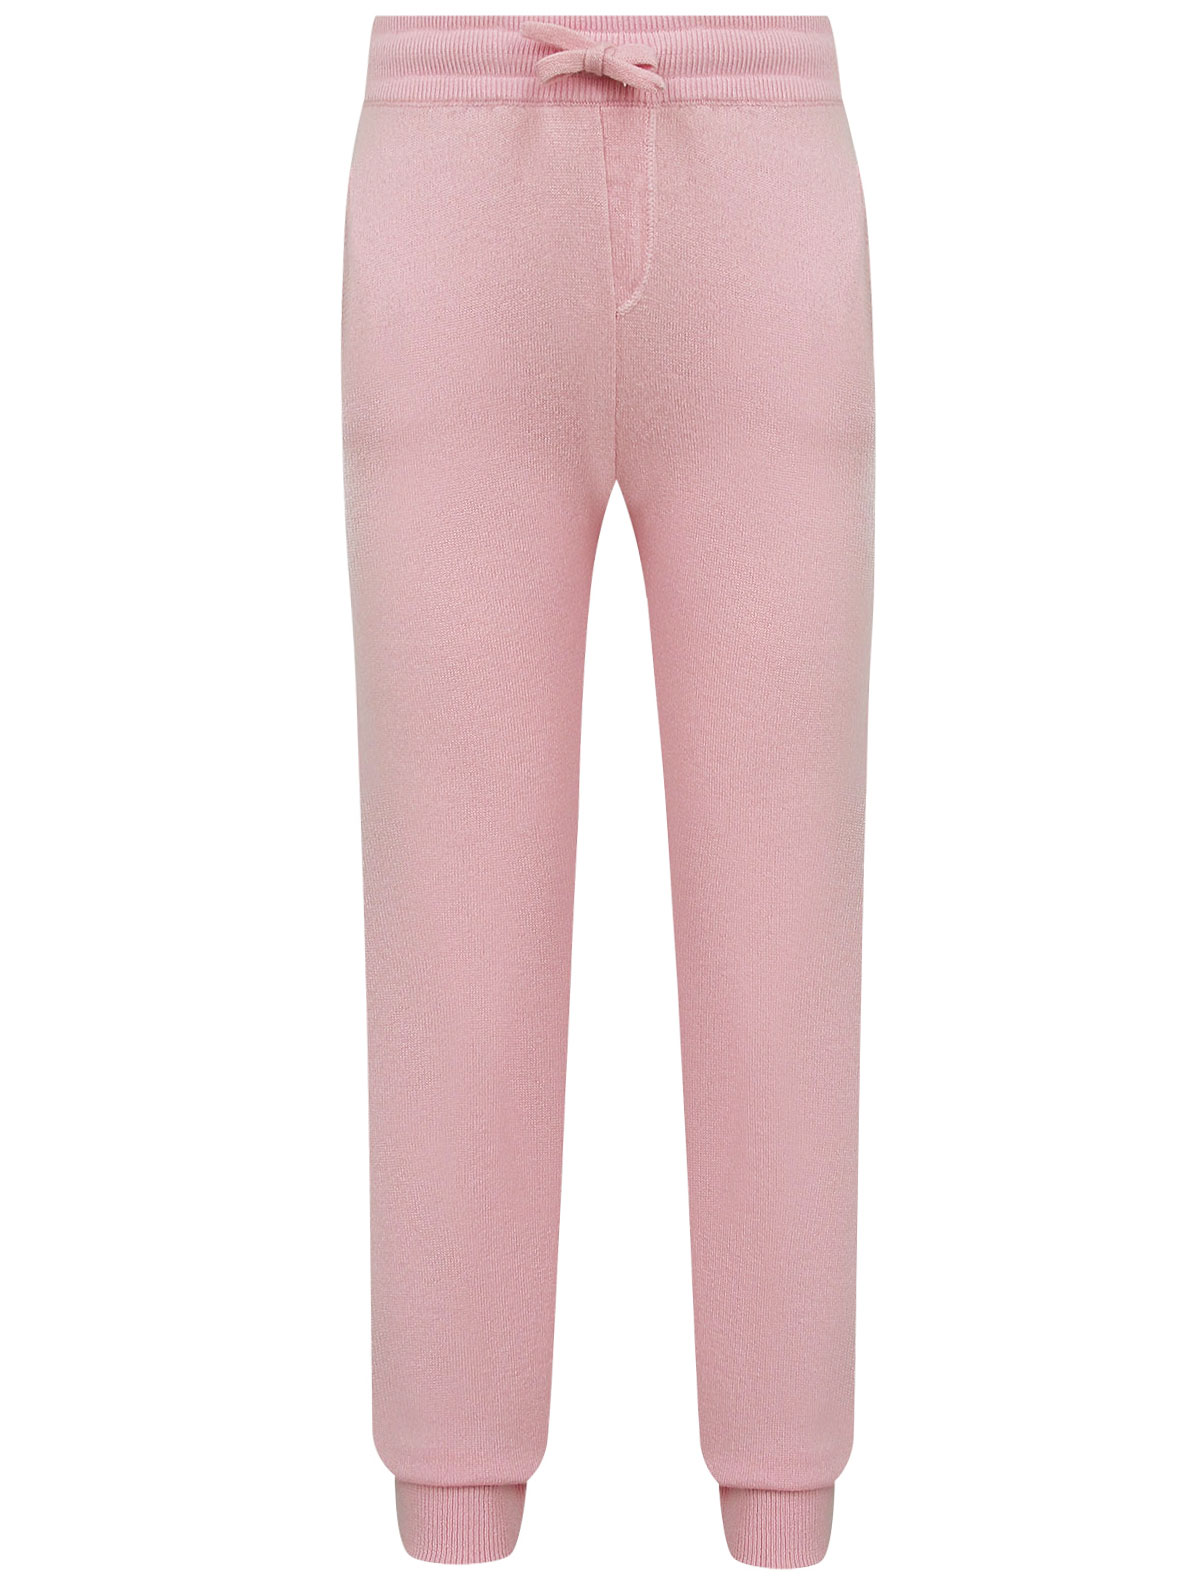 спортивные брюки dolce & gabbana для девочки, розовые